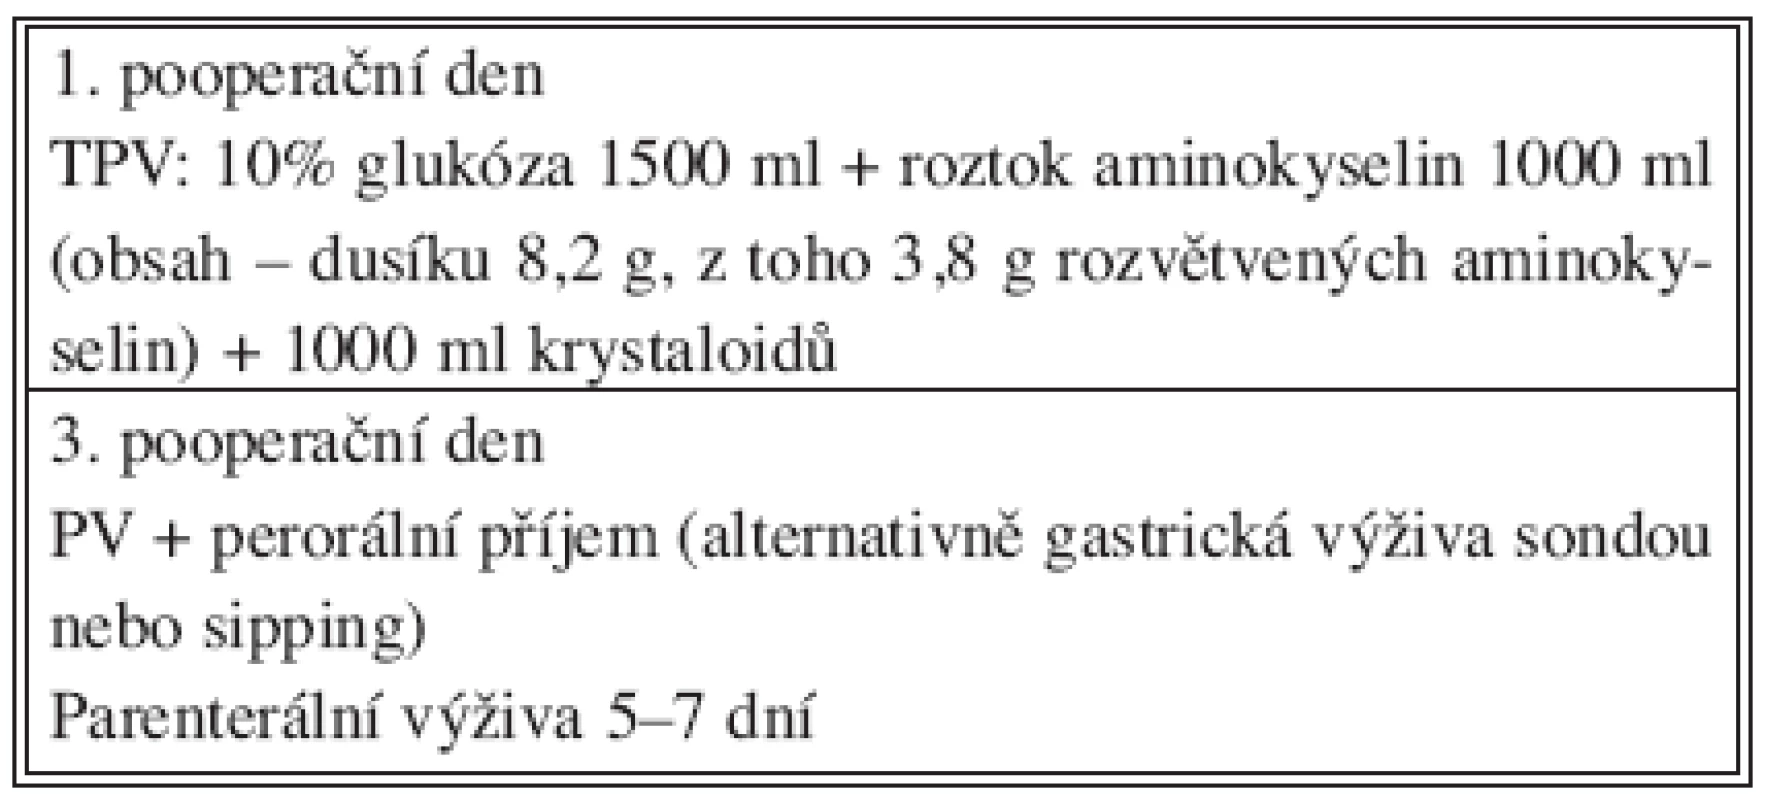 Složení pooperační nutriční podpory (anatomická resekce 2 segmenty a více, n = 42)
Tab. 3. Postoperative nutritional support contents (anatomical resection of 2 or more segments, n = 42)